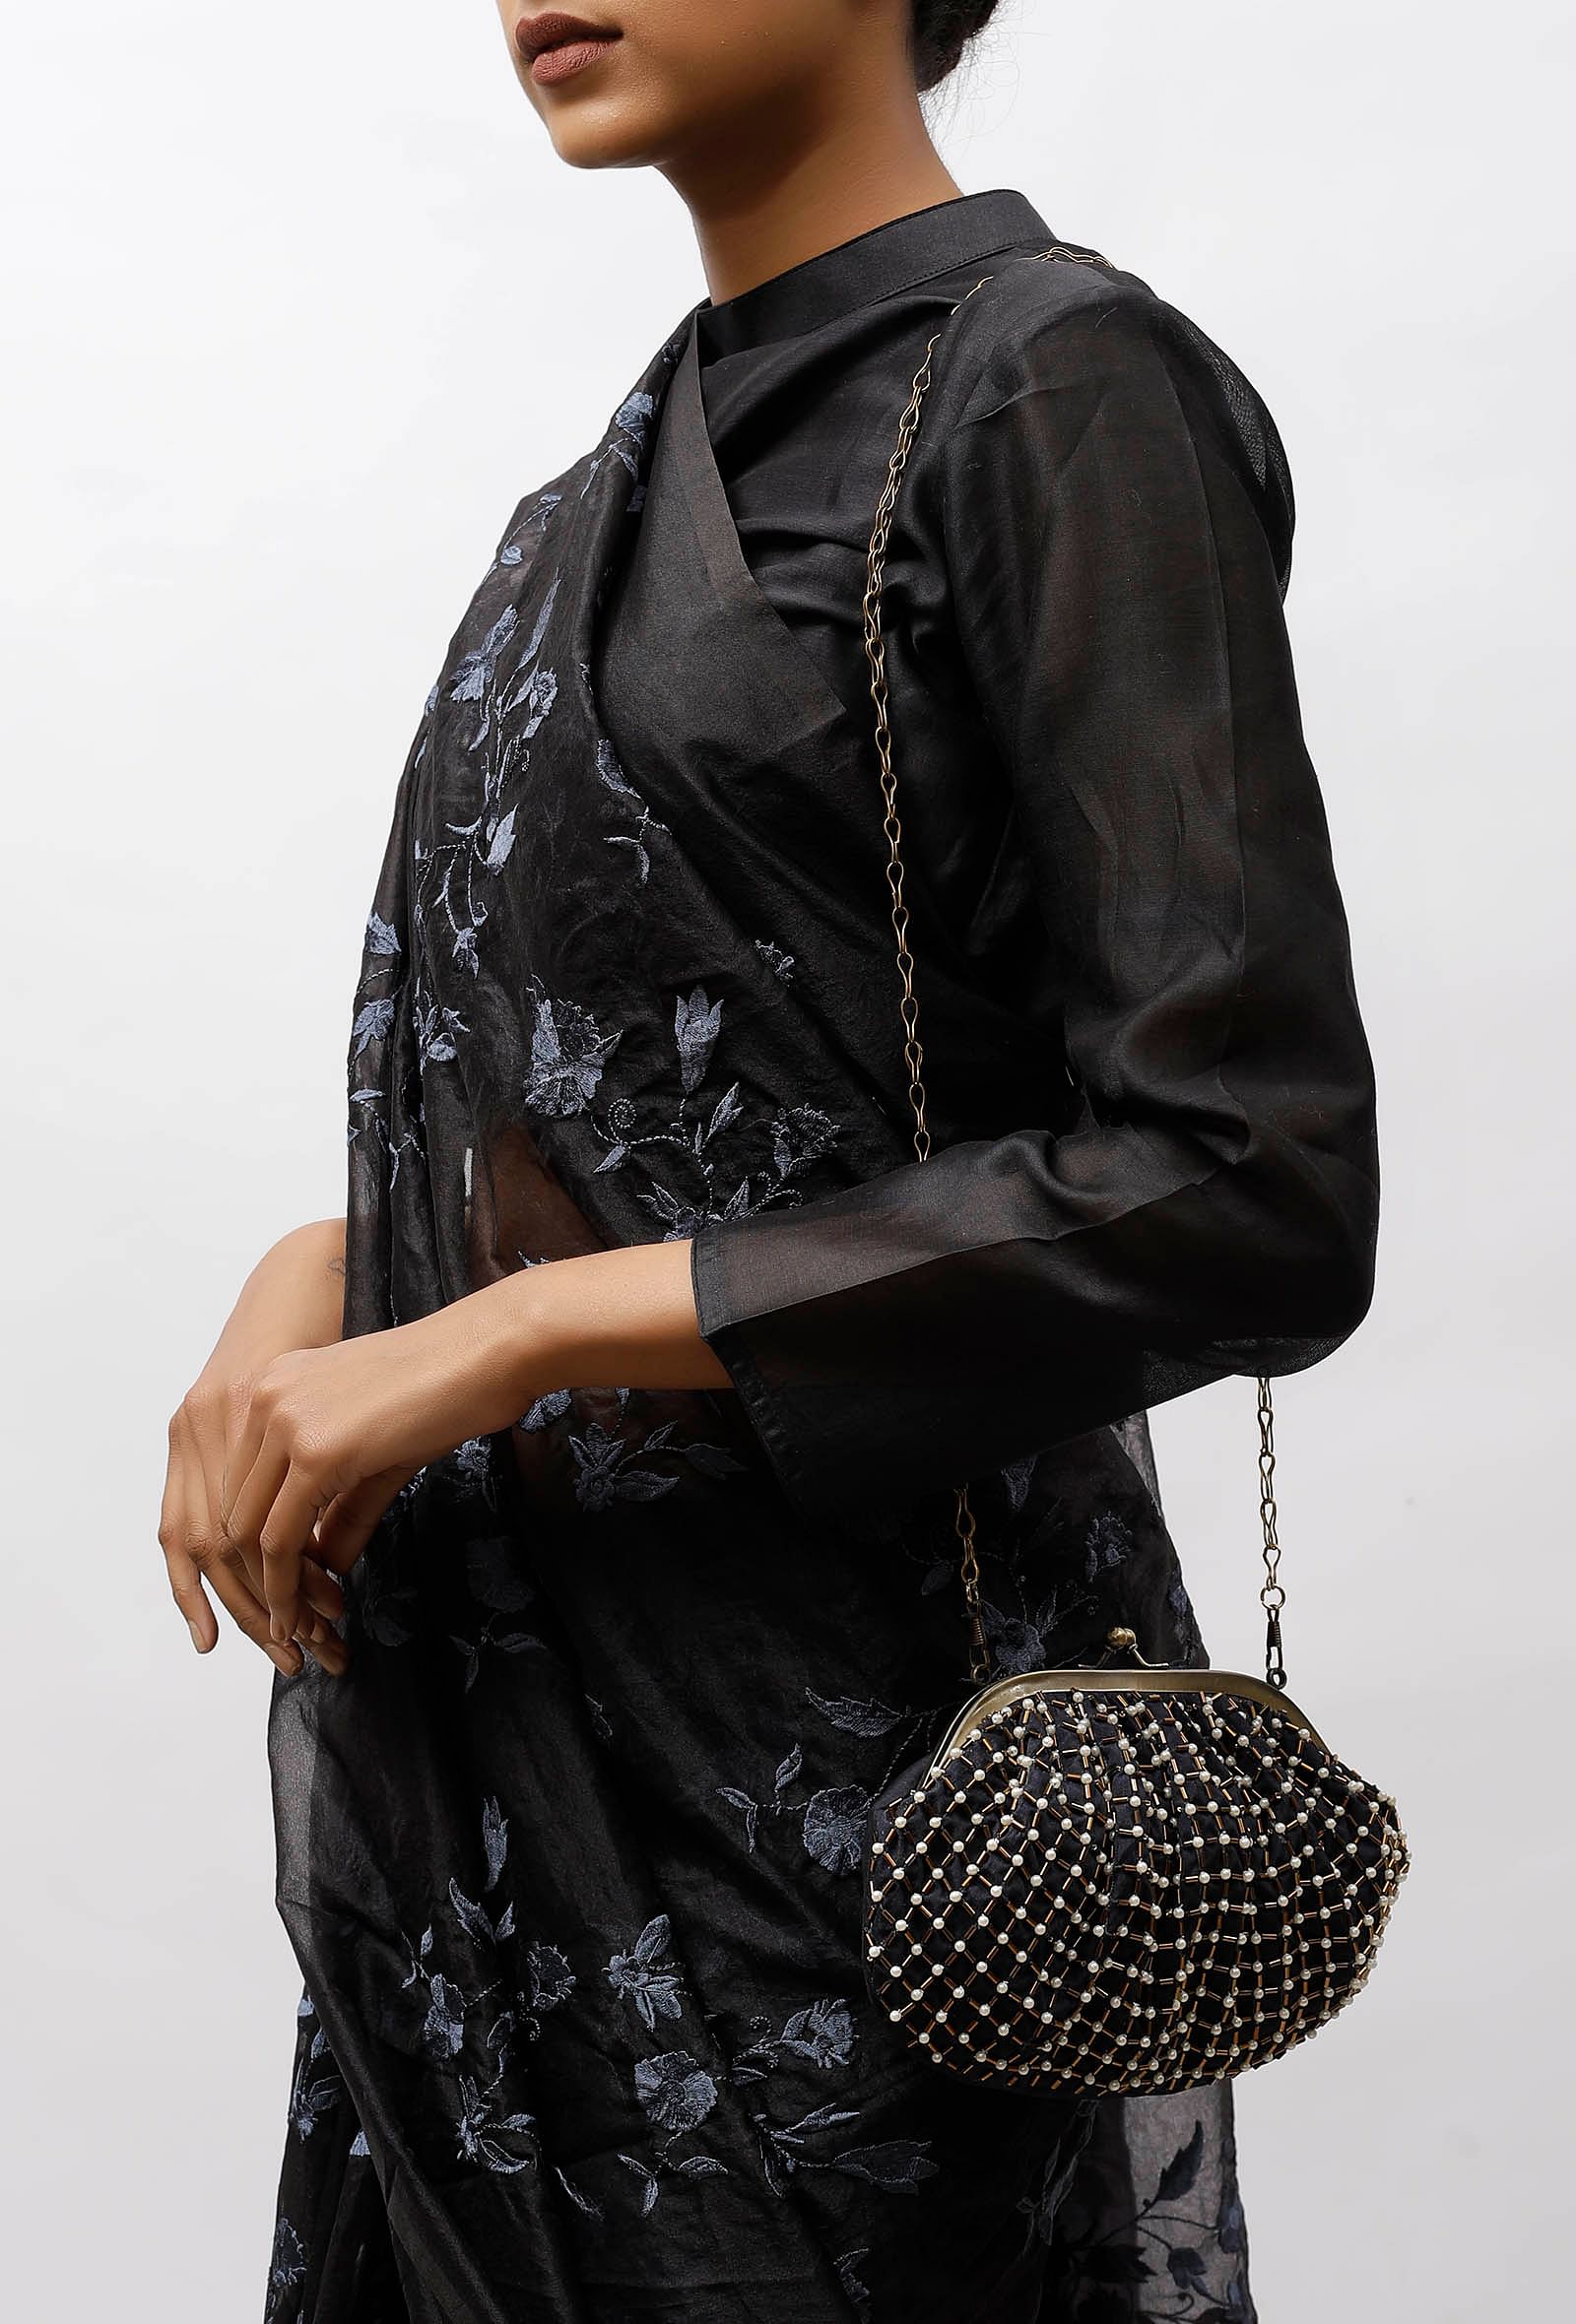 Auster Black Embellished Clutch Bag